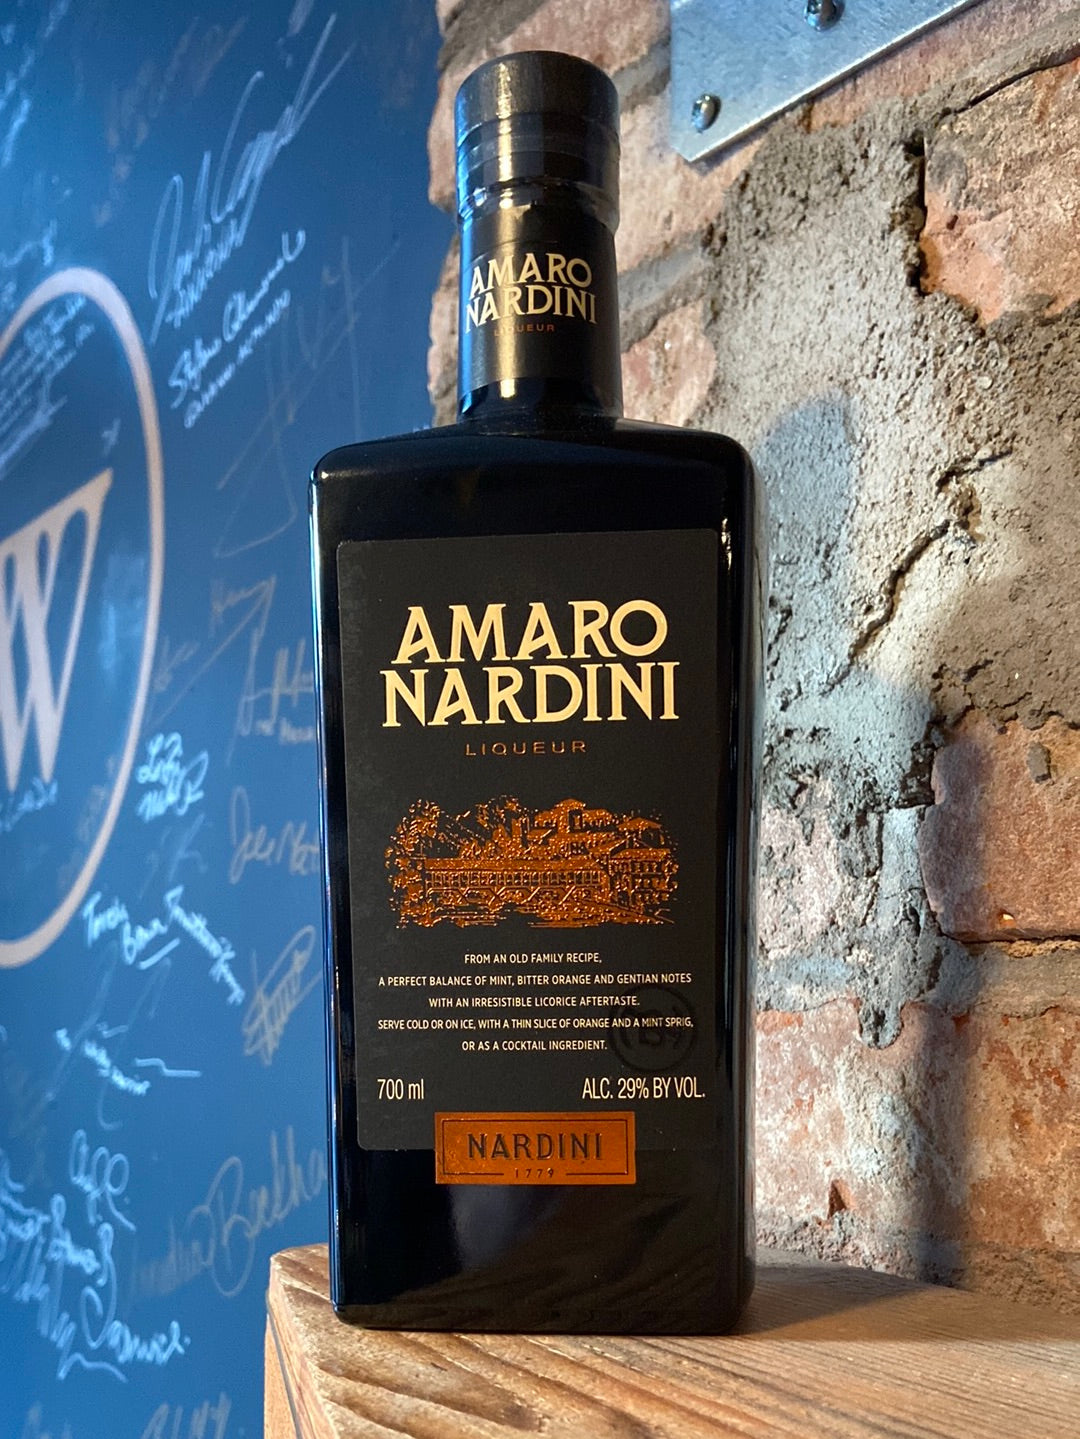 Nardini Amaro 700ml [NY State Only]